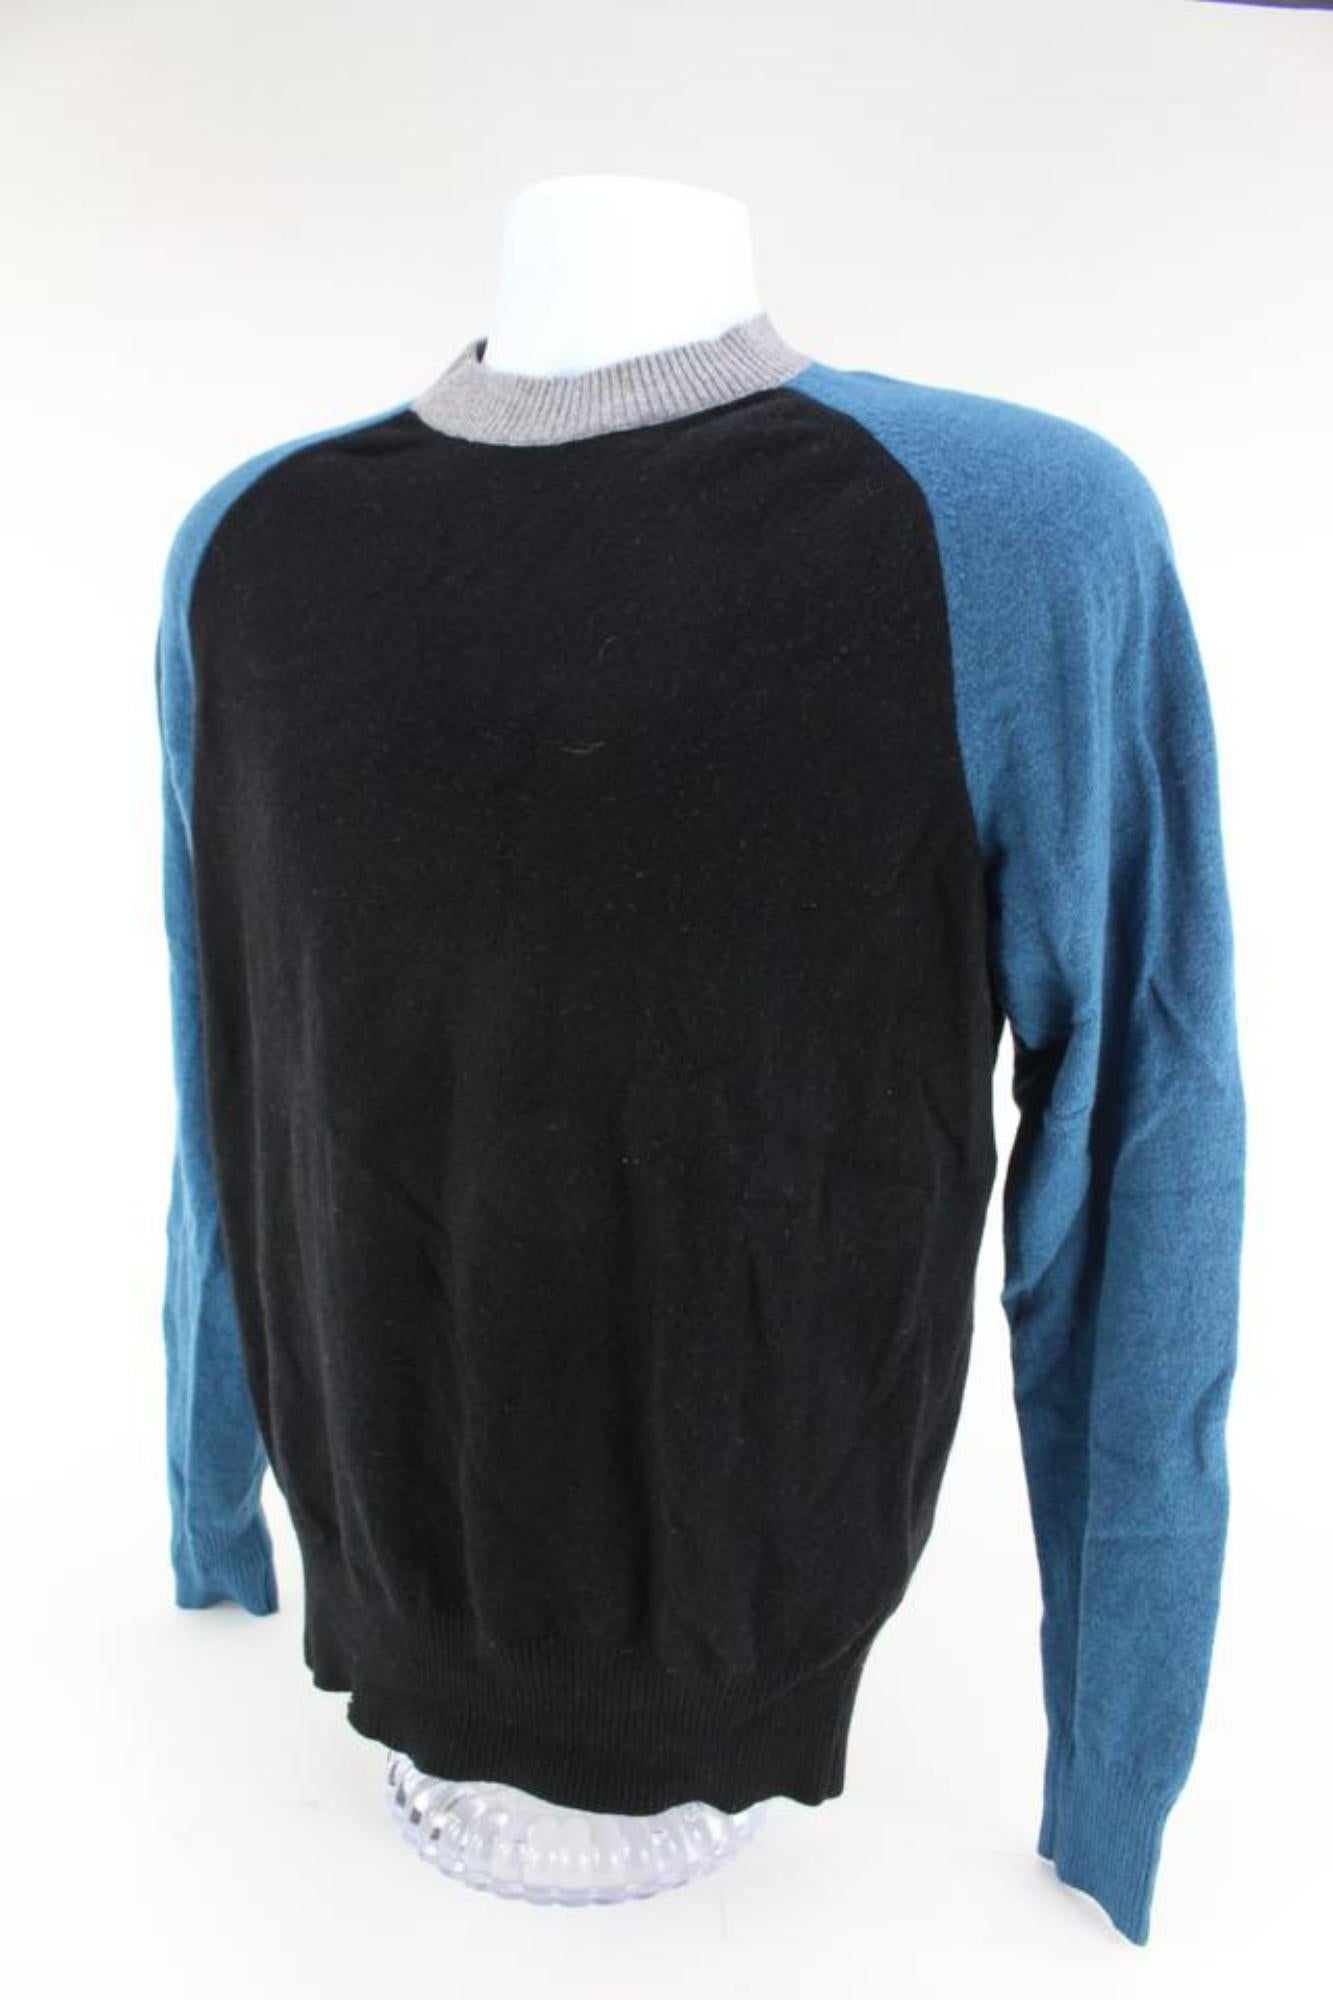 Louis Vuitton VIrgil Abloh Black x Blue Long Sleeve Sweater Shirt 3lz526s For Sale 4